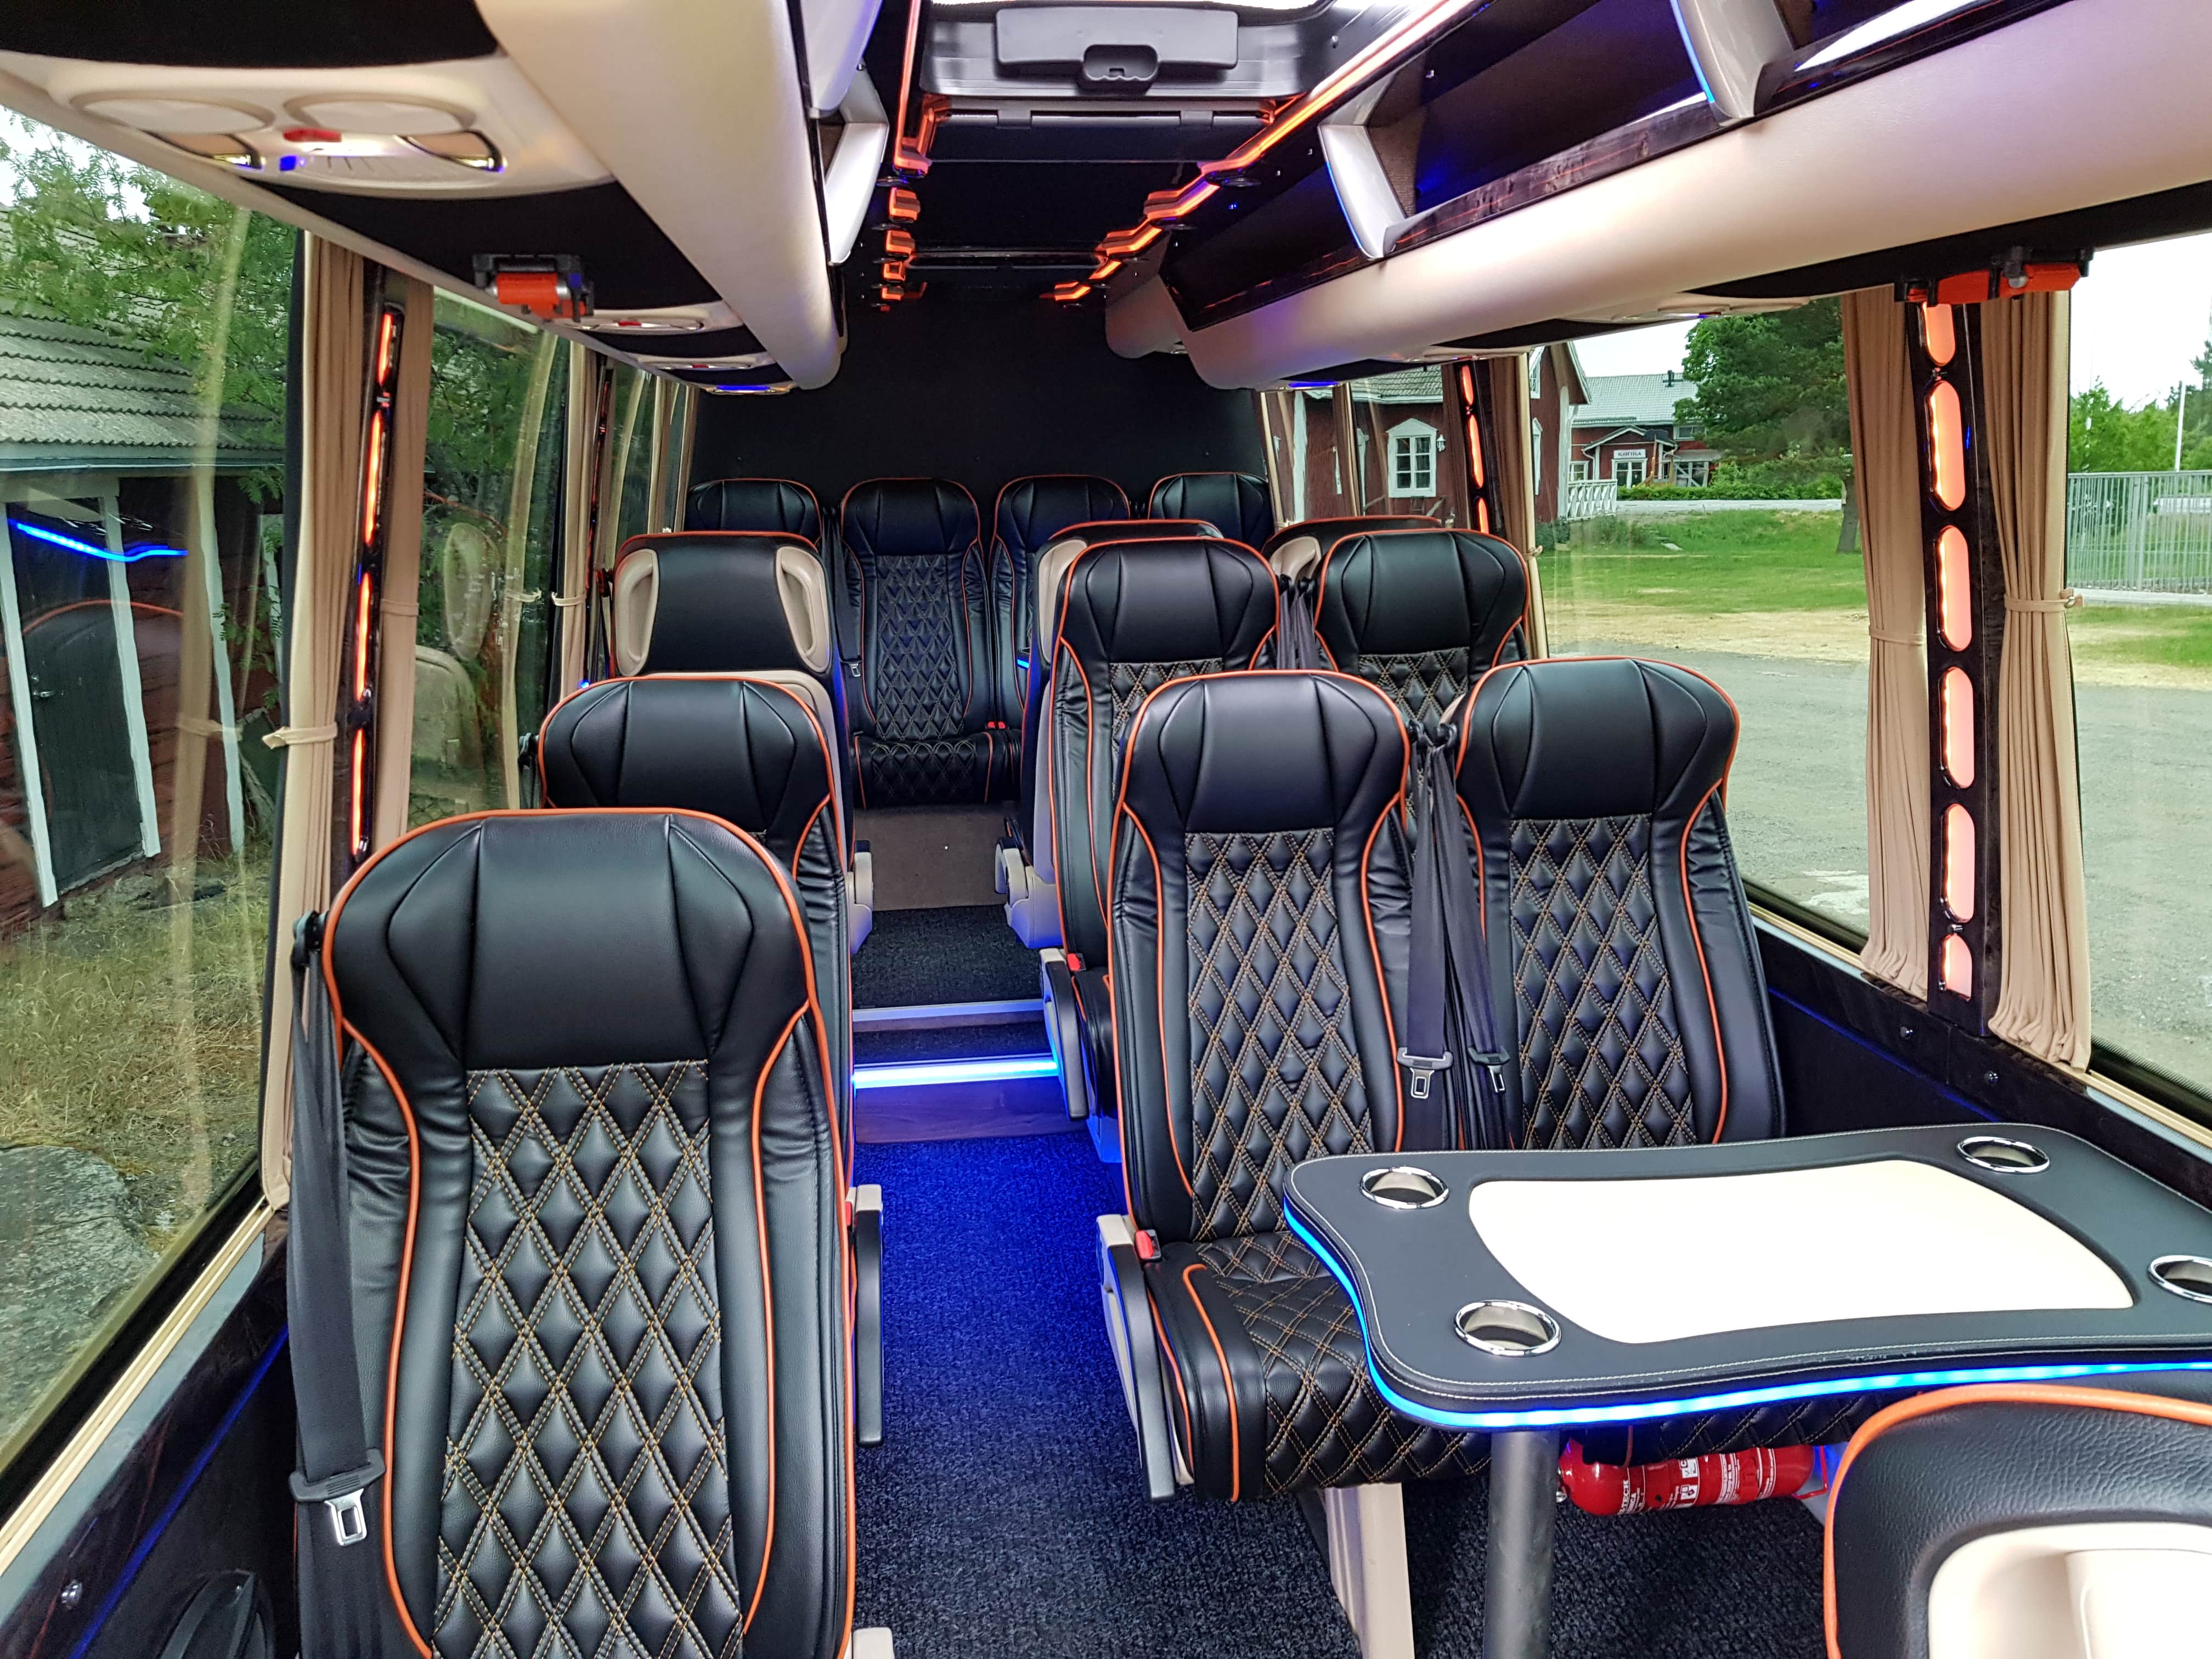 Limo Finland's VIP bus interior